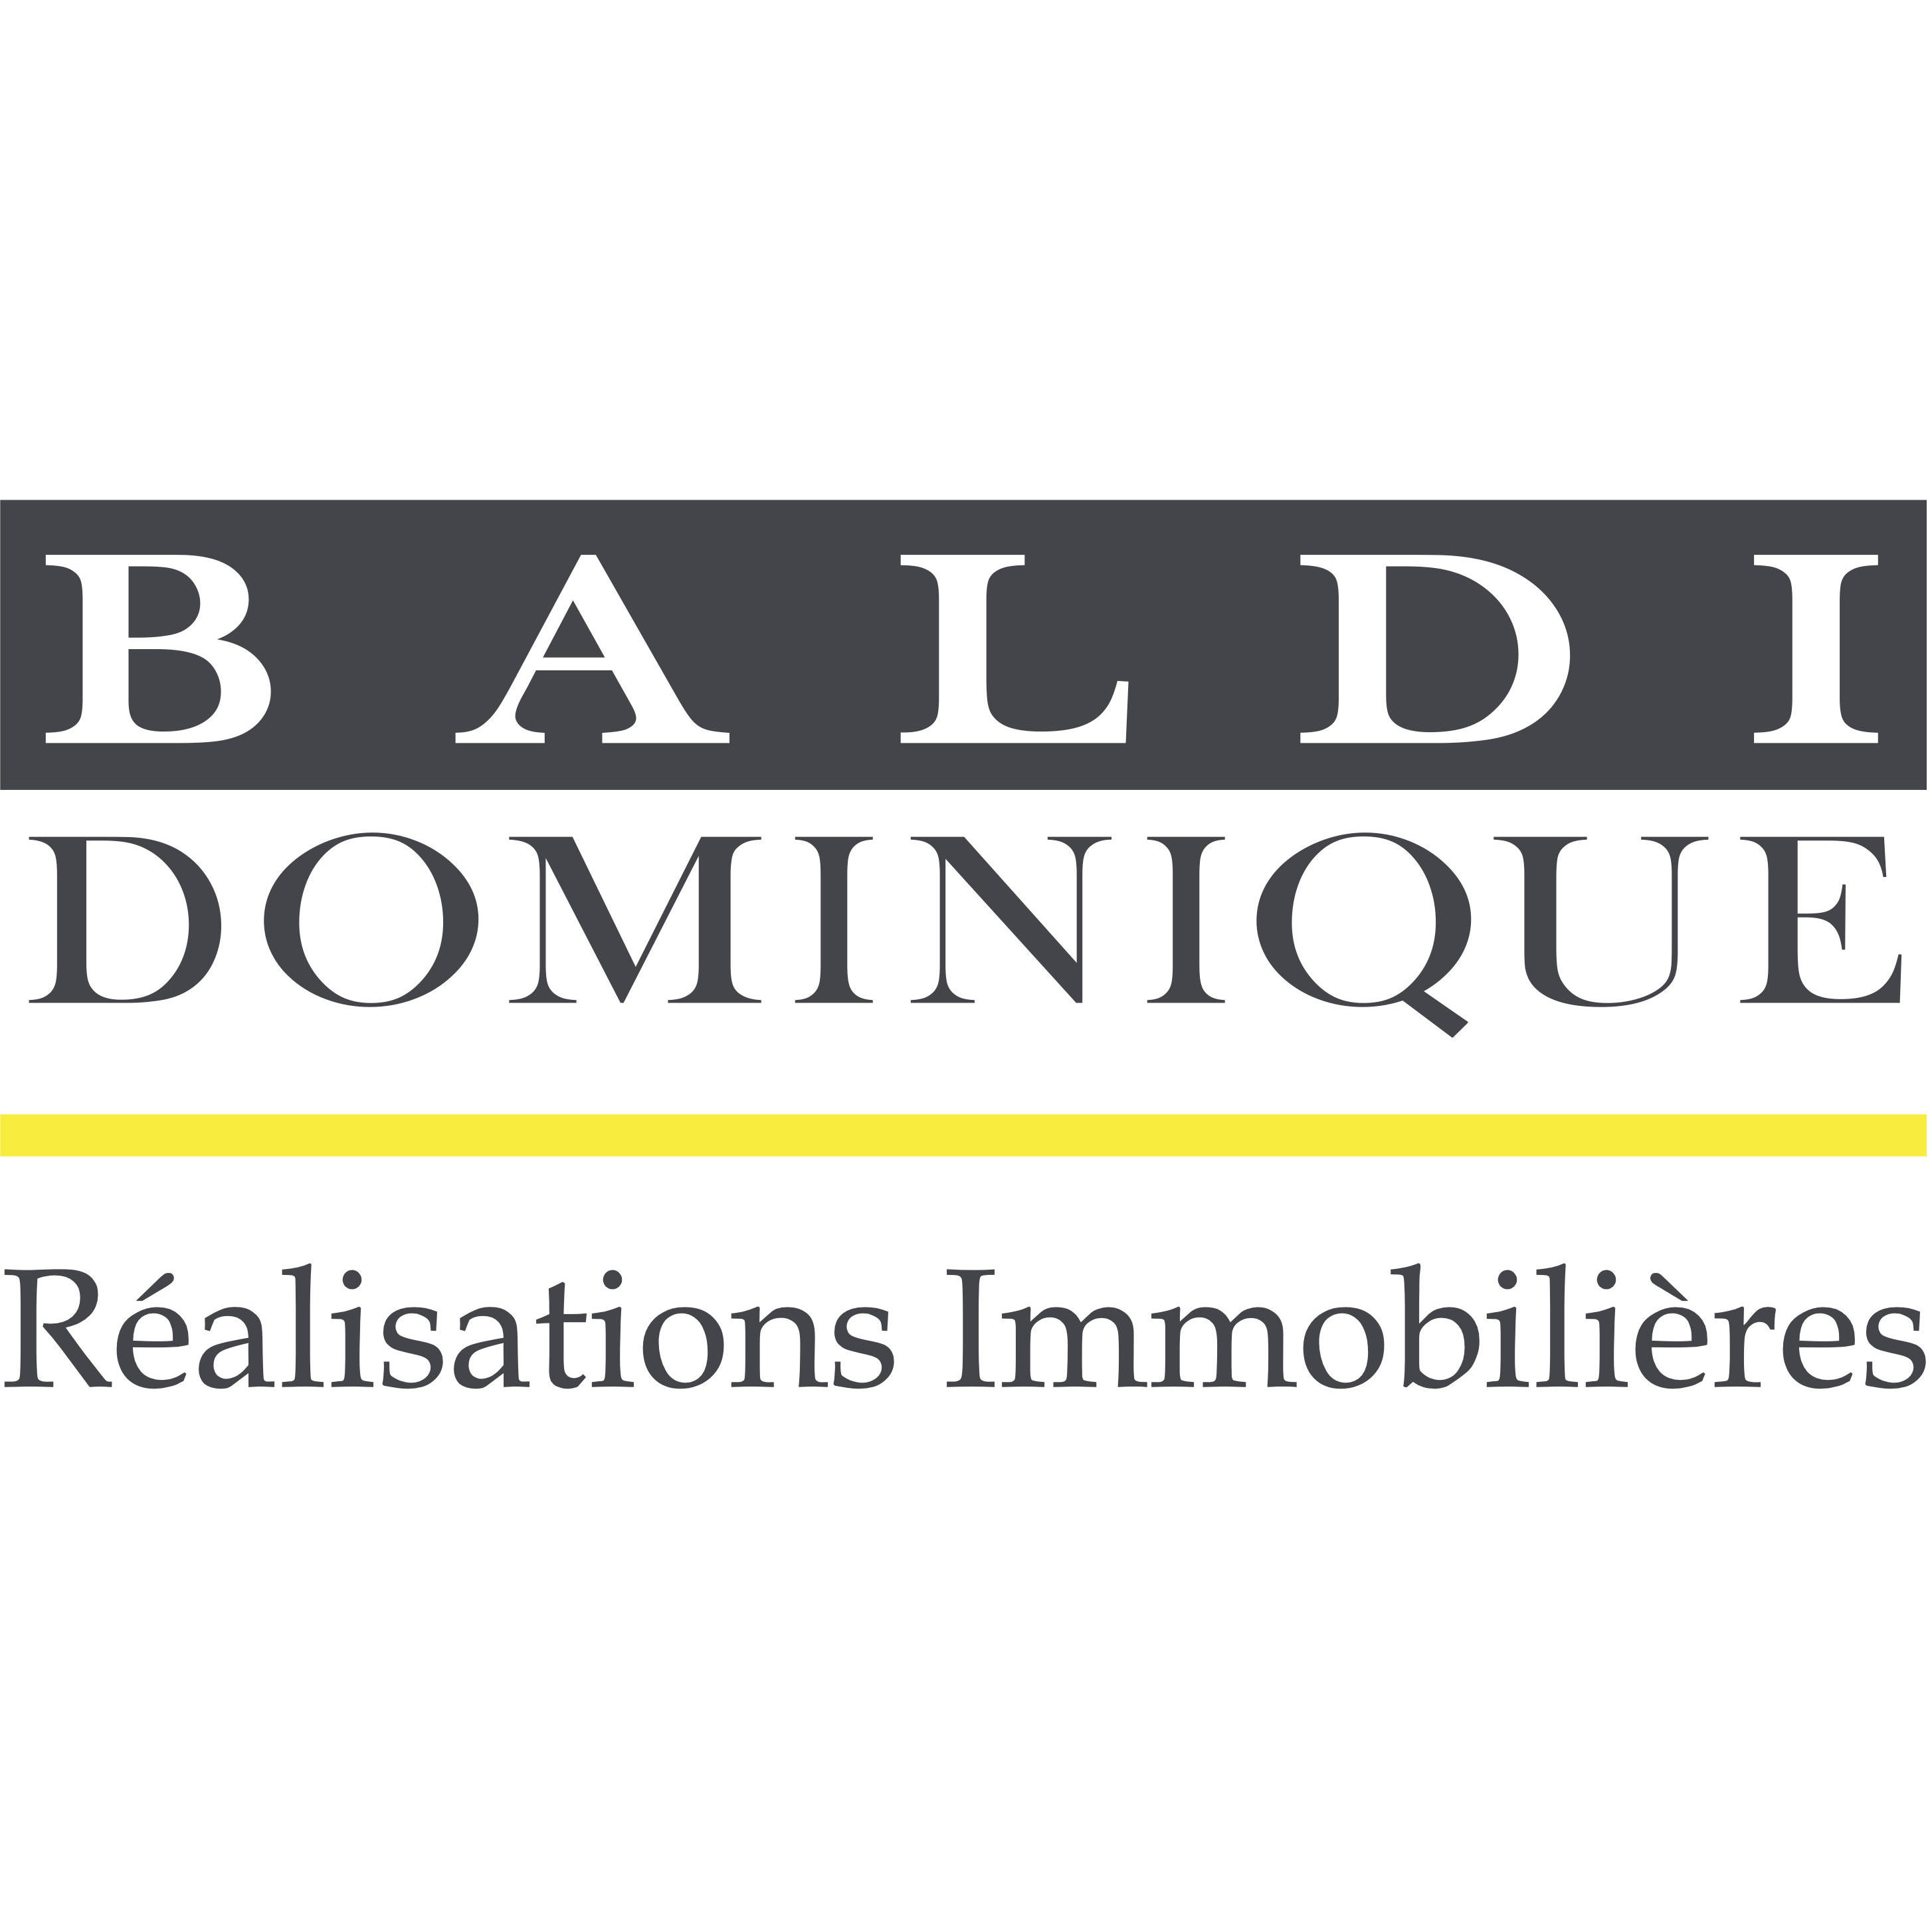 Dominique Baldi Entreprises SA